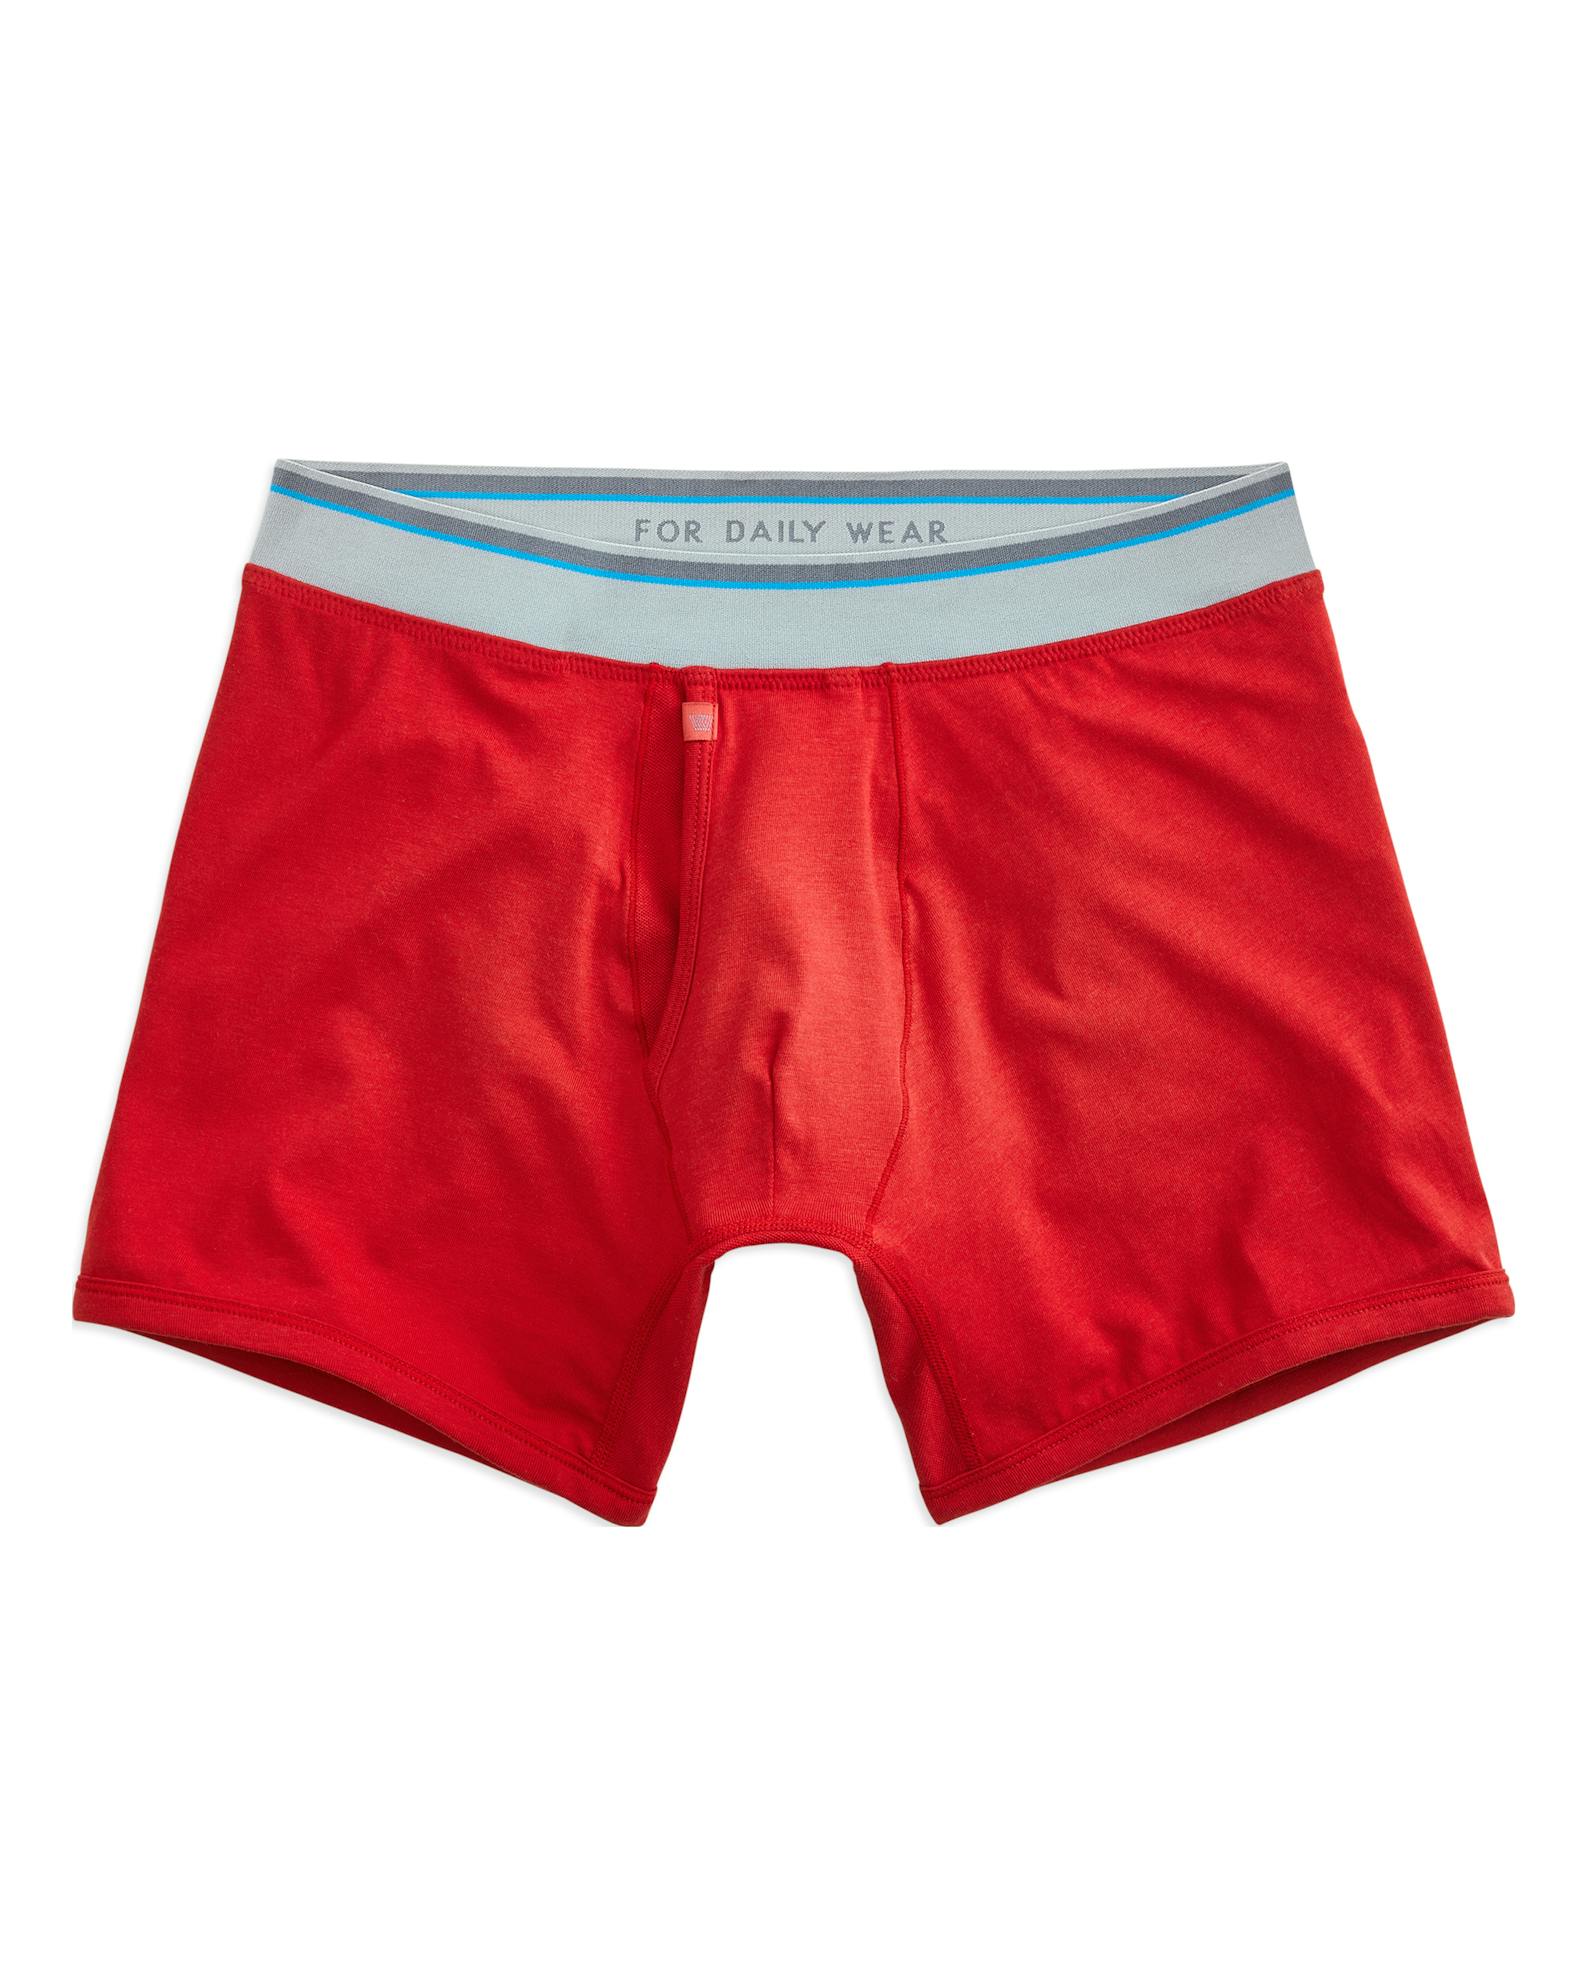 Mack Weldon 18-Hour Jersey Boxer Brief - No Fear Red, Underwear